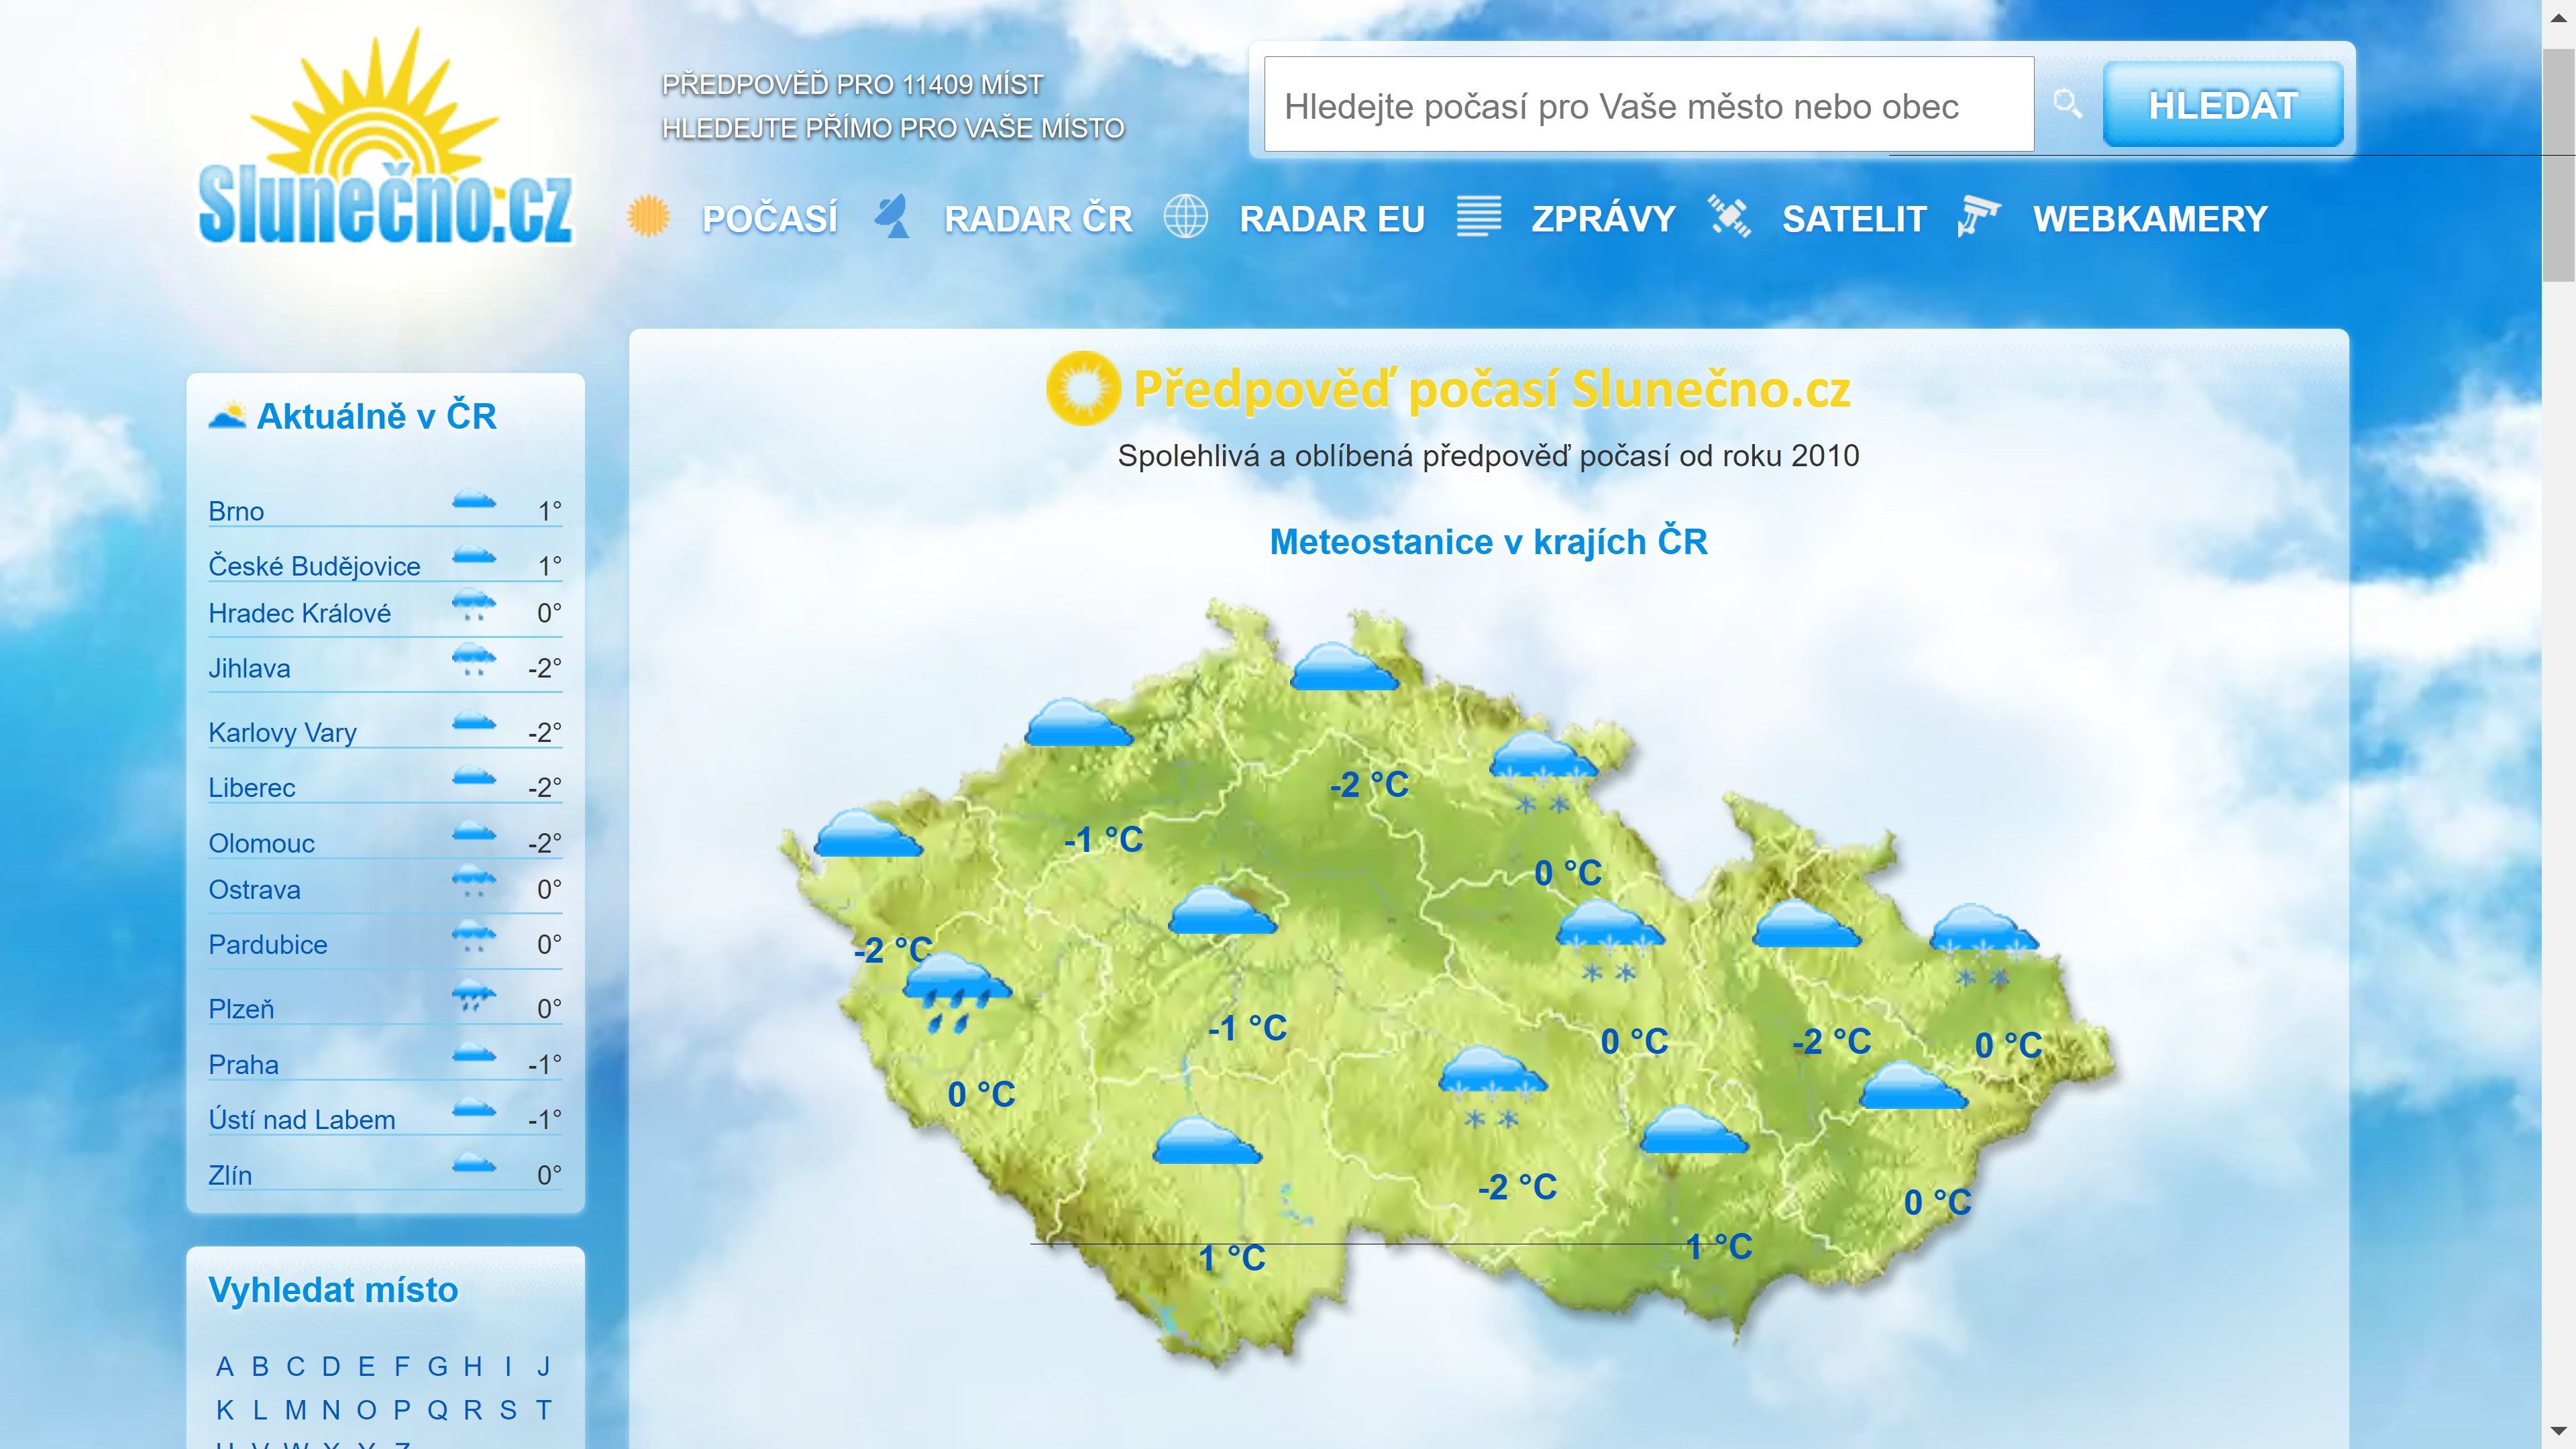 Weather Forecast Slunecno.cz